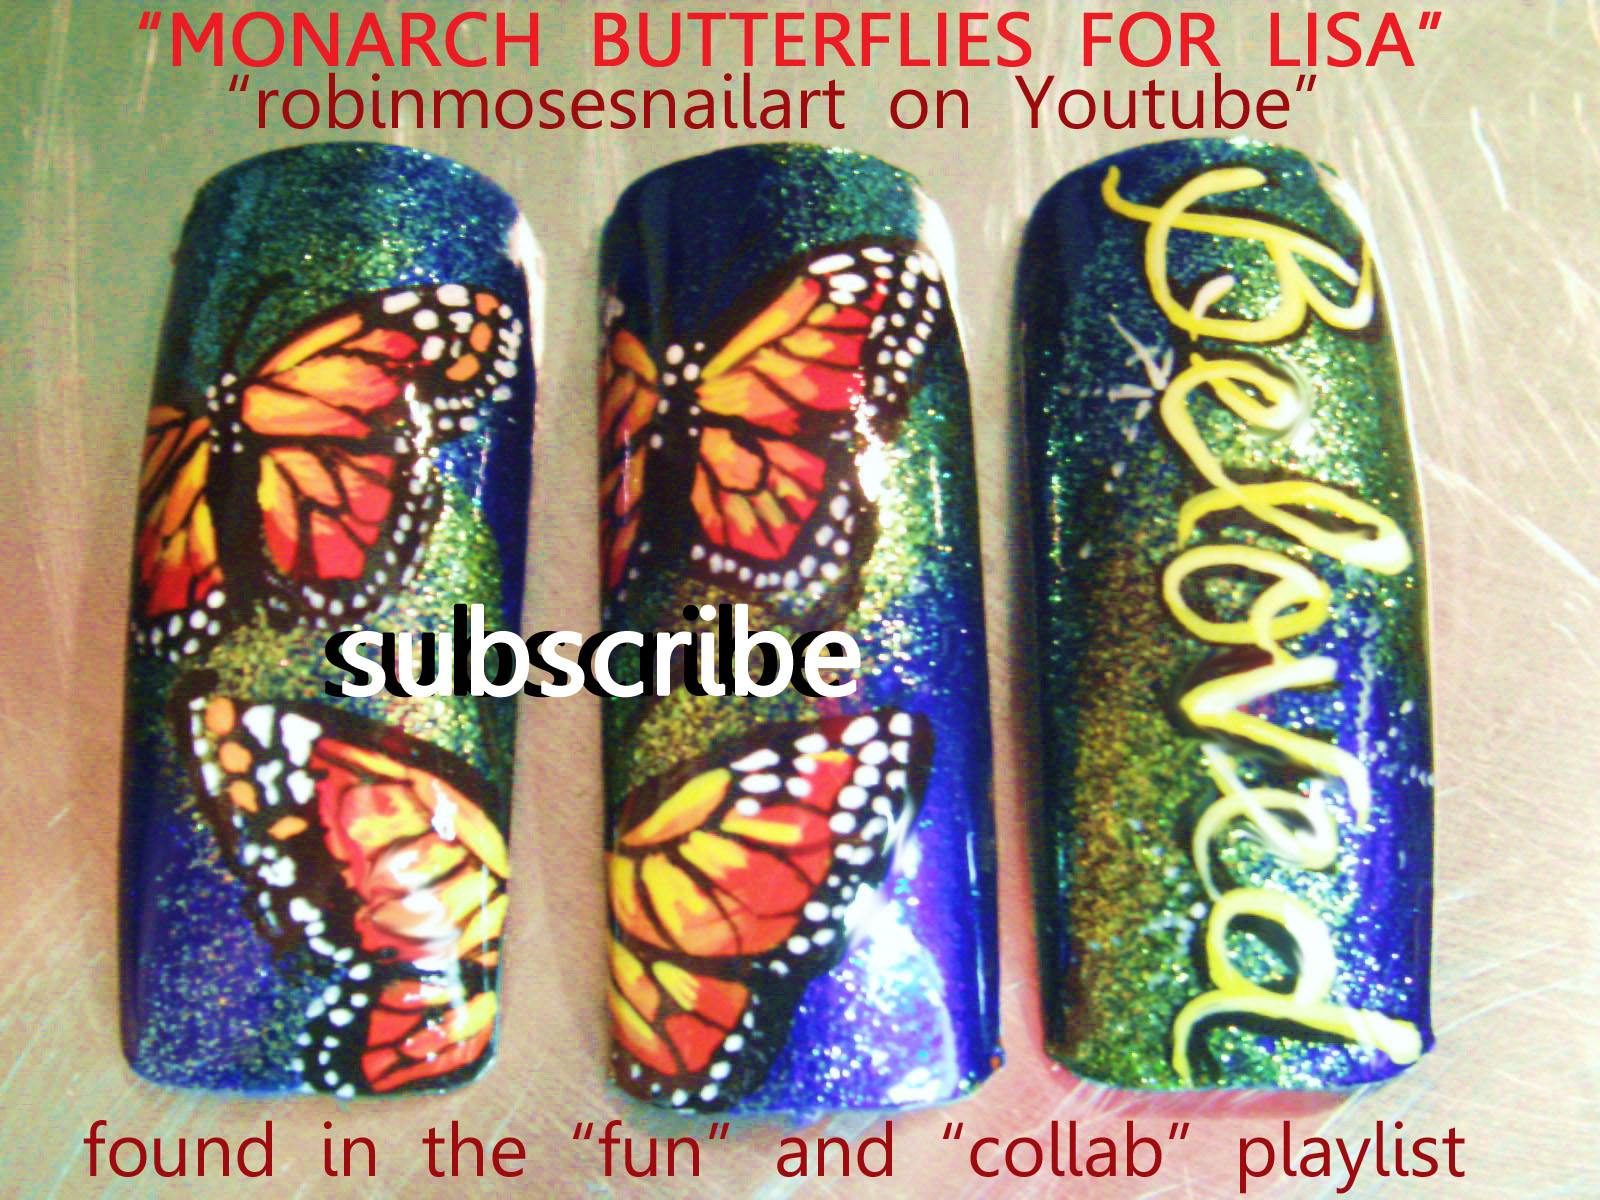 http://1.bp.blogspot.com/-IcXQSQQeWjs/UFoCyNPi0lI/AAAAAAAAB1Q/o80iSqMU3Ms/s1600/monarch+butterflies+for+lisa.jpg